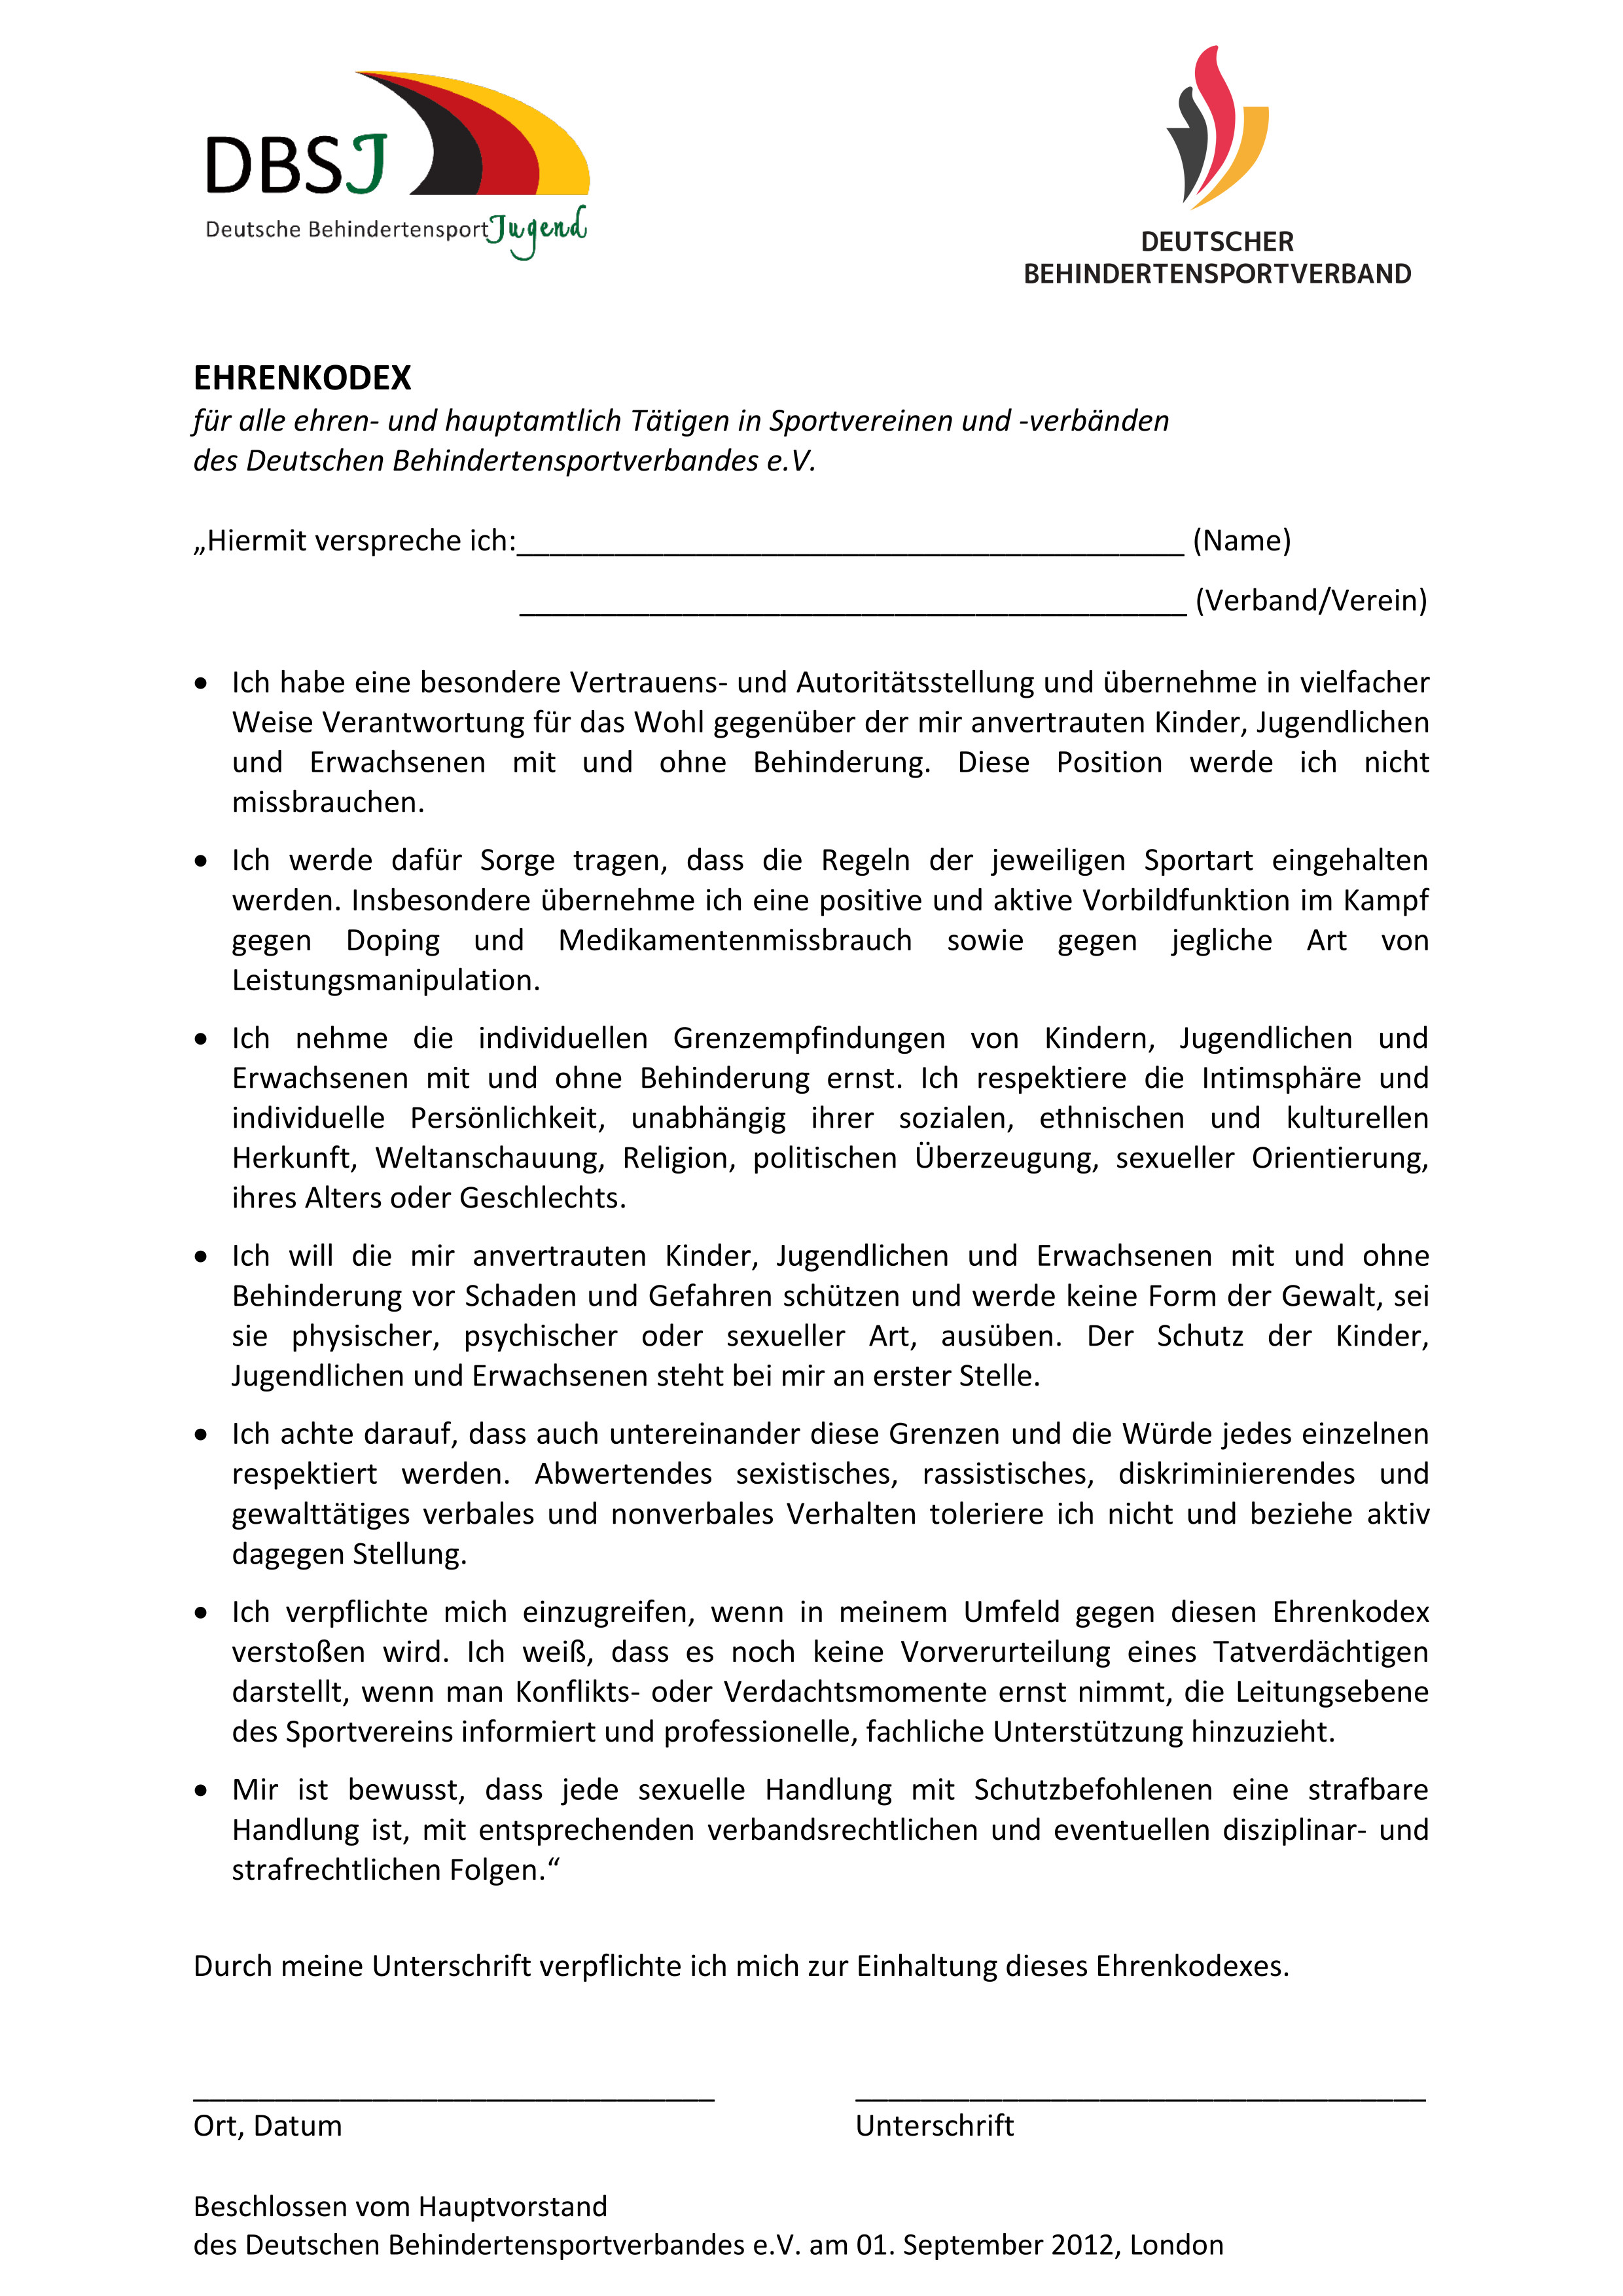 Erste Seite der PDF-Datei: Ehrenkodex DBS